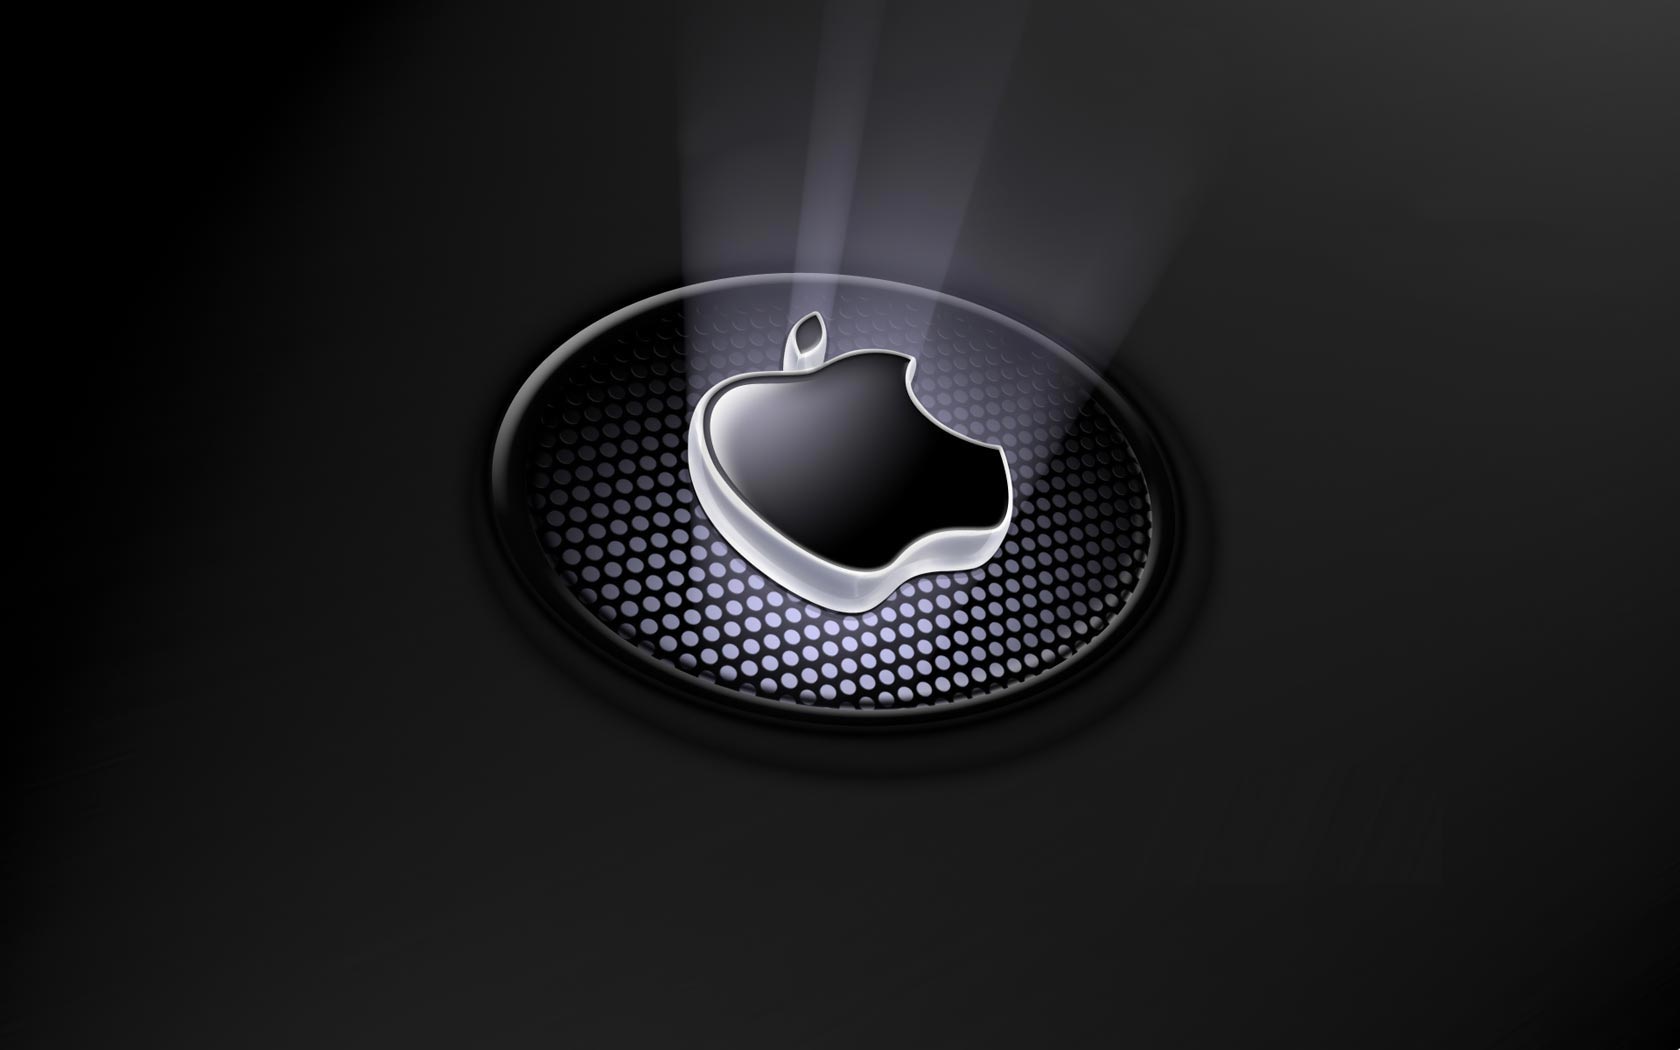 47+] Apple Logo Wallpaper for Desktop - WallpaperSafari